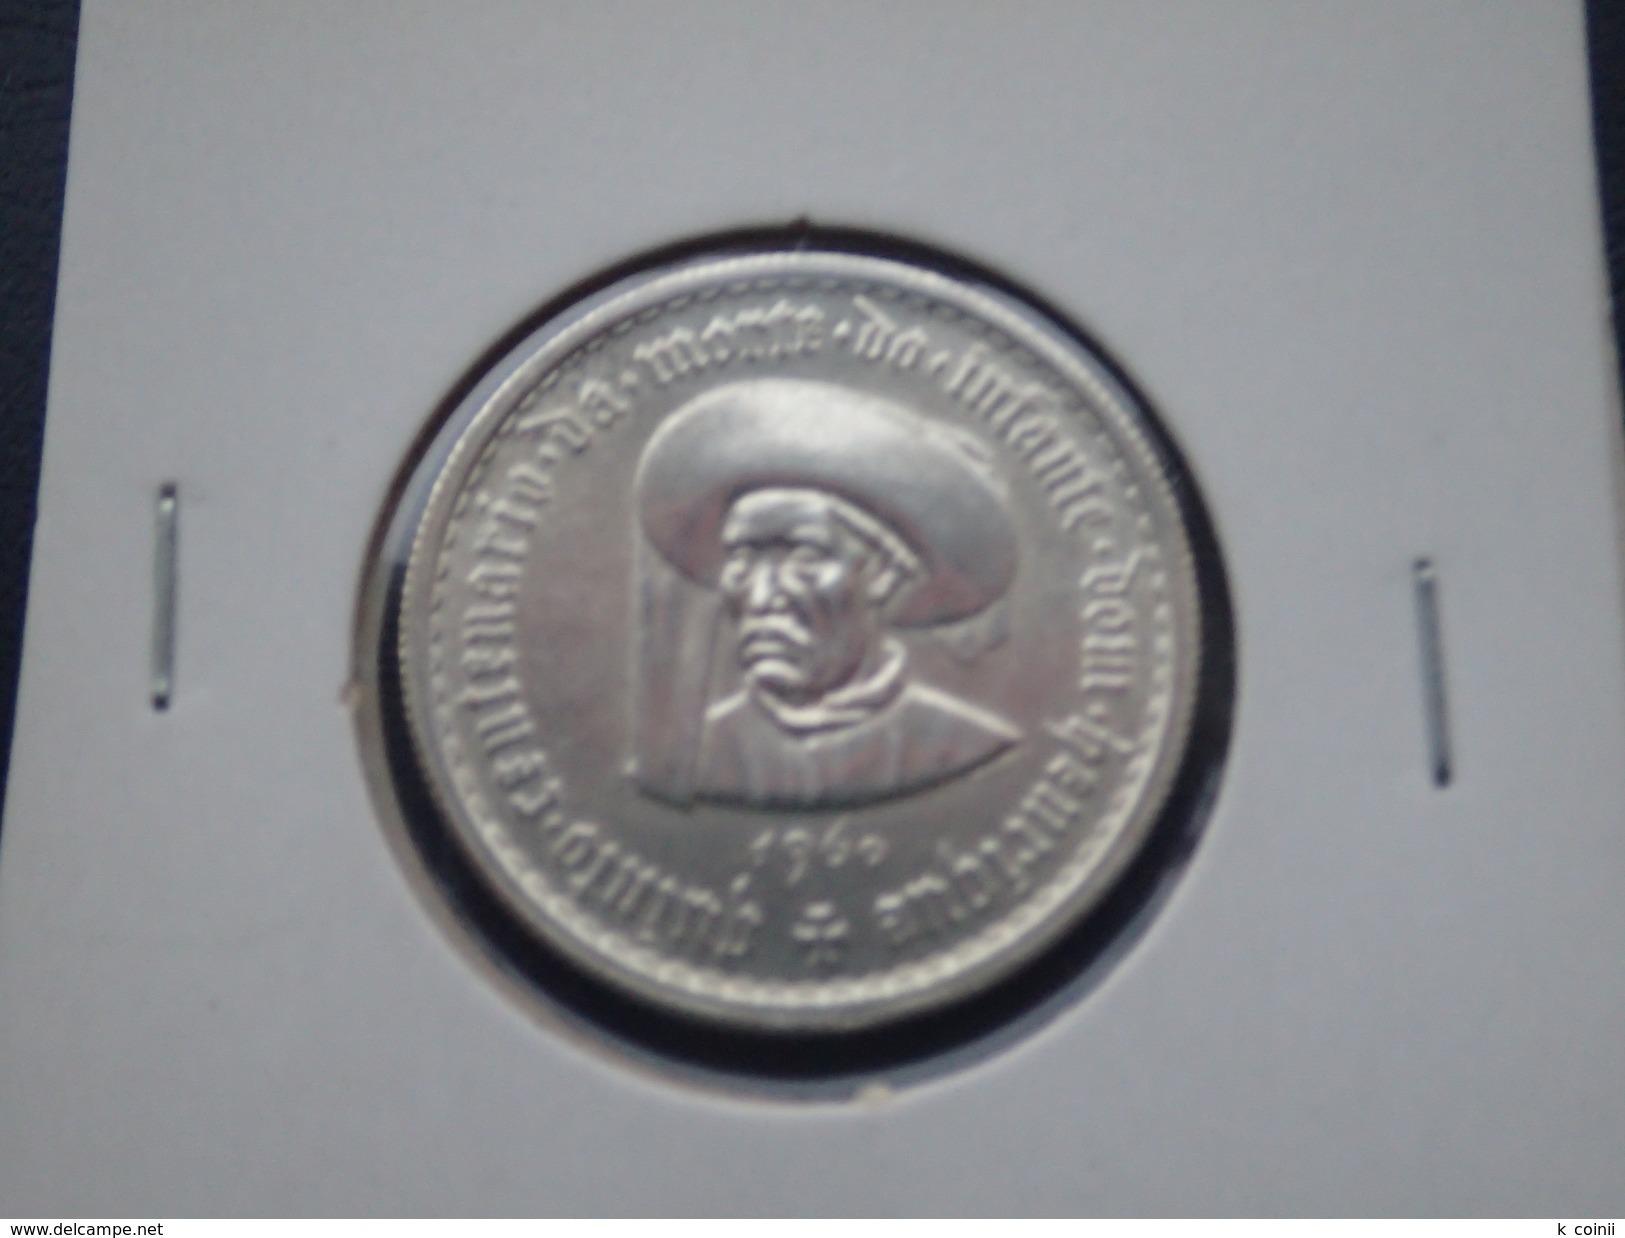 Portugal - 5 Escudos (5$00) 1960 Infante D. Henrique Silver - UNC - Portugal